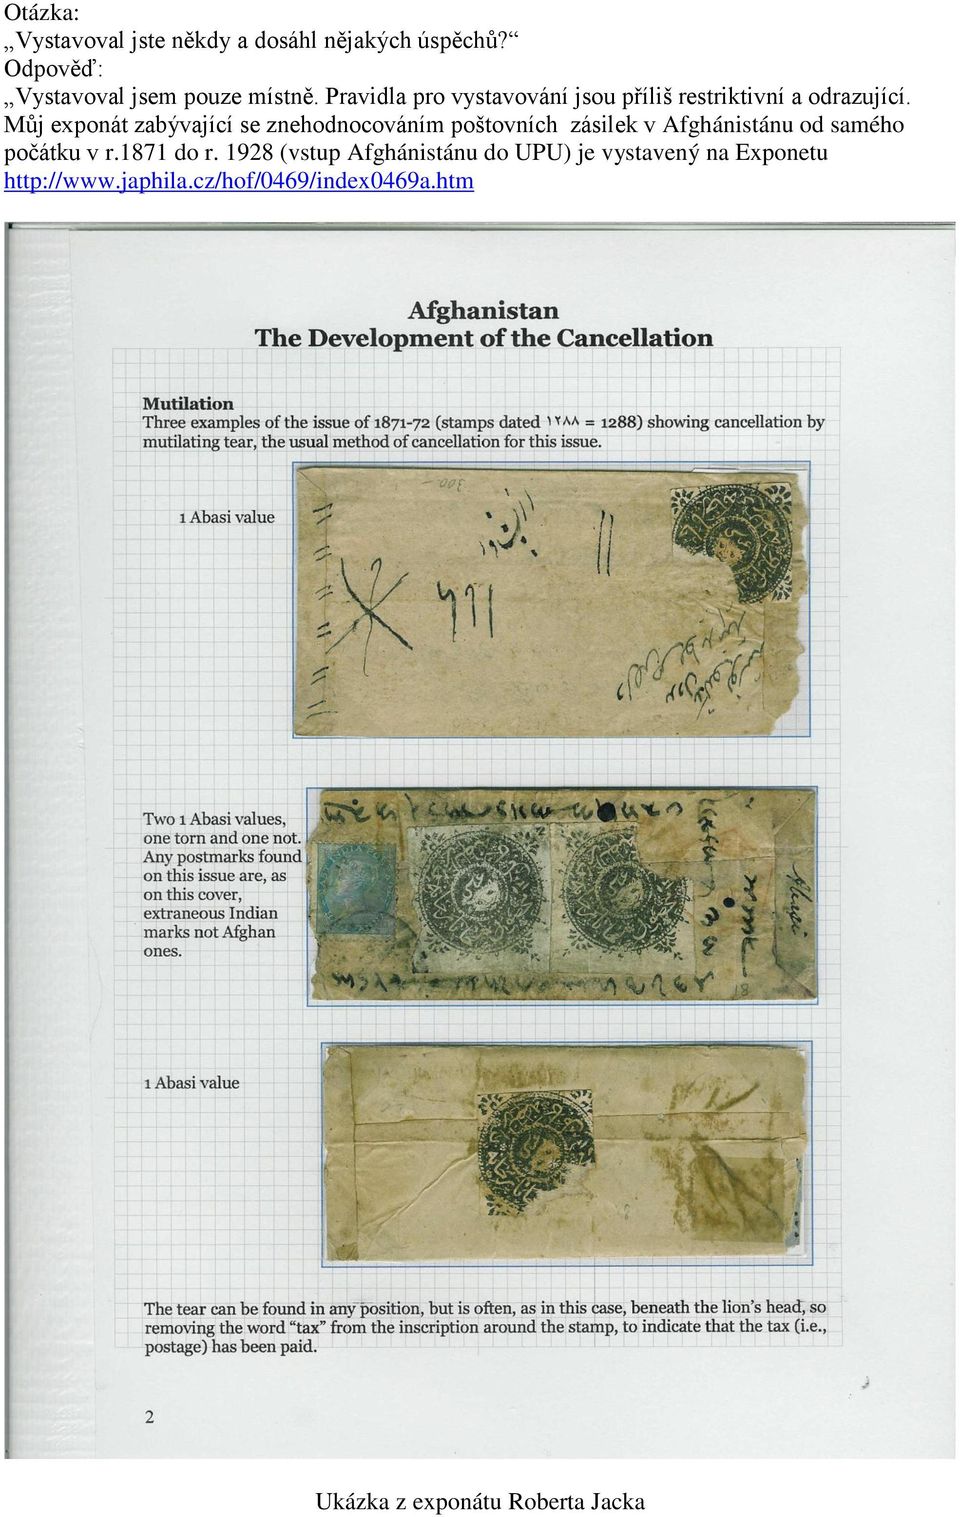 Můj exponát zabývající se znehodnocováním poštovních zásilek v Afghánistánu od samého počátku v